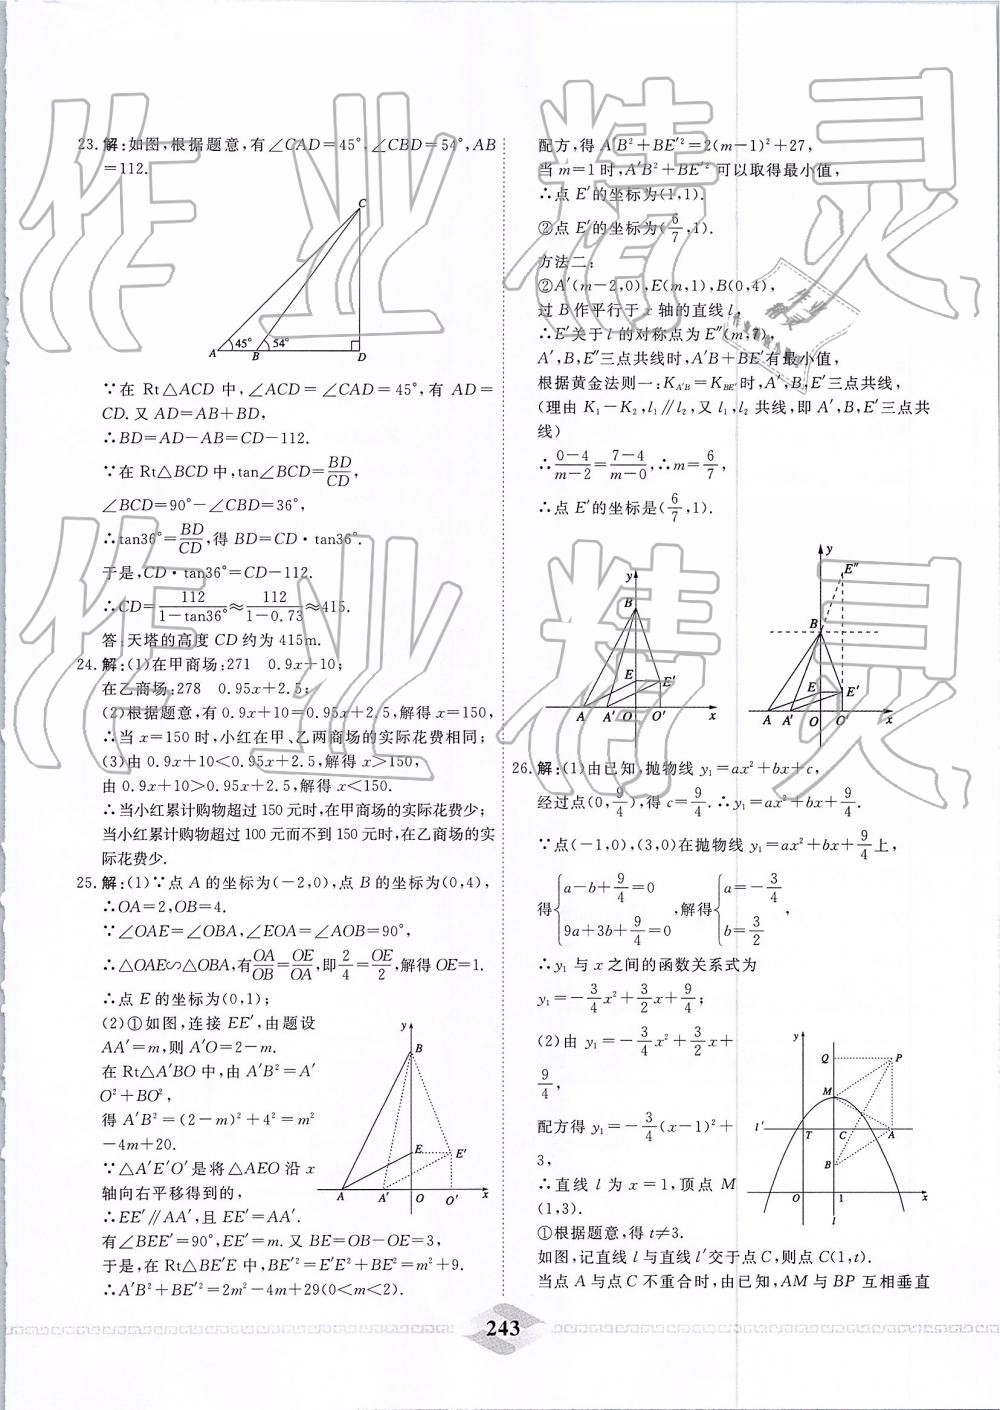 2019年一飞冲天中考模拟试题汇编数学 第83页